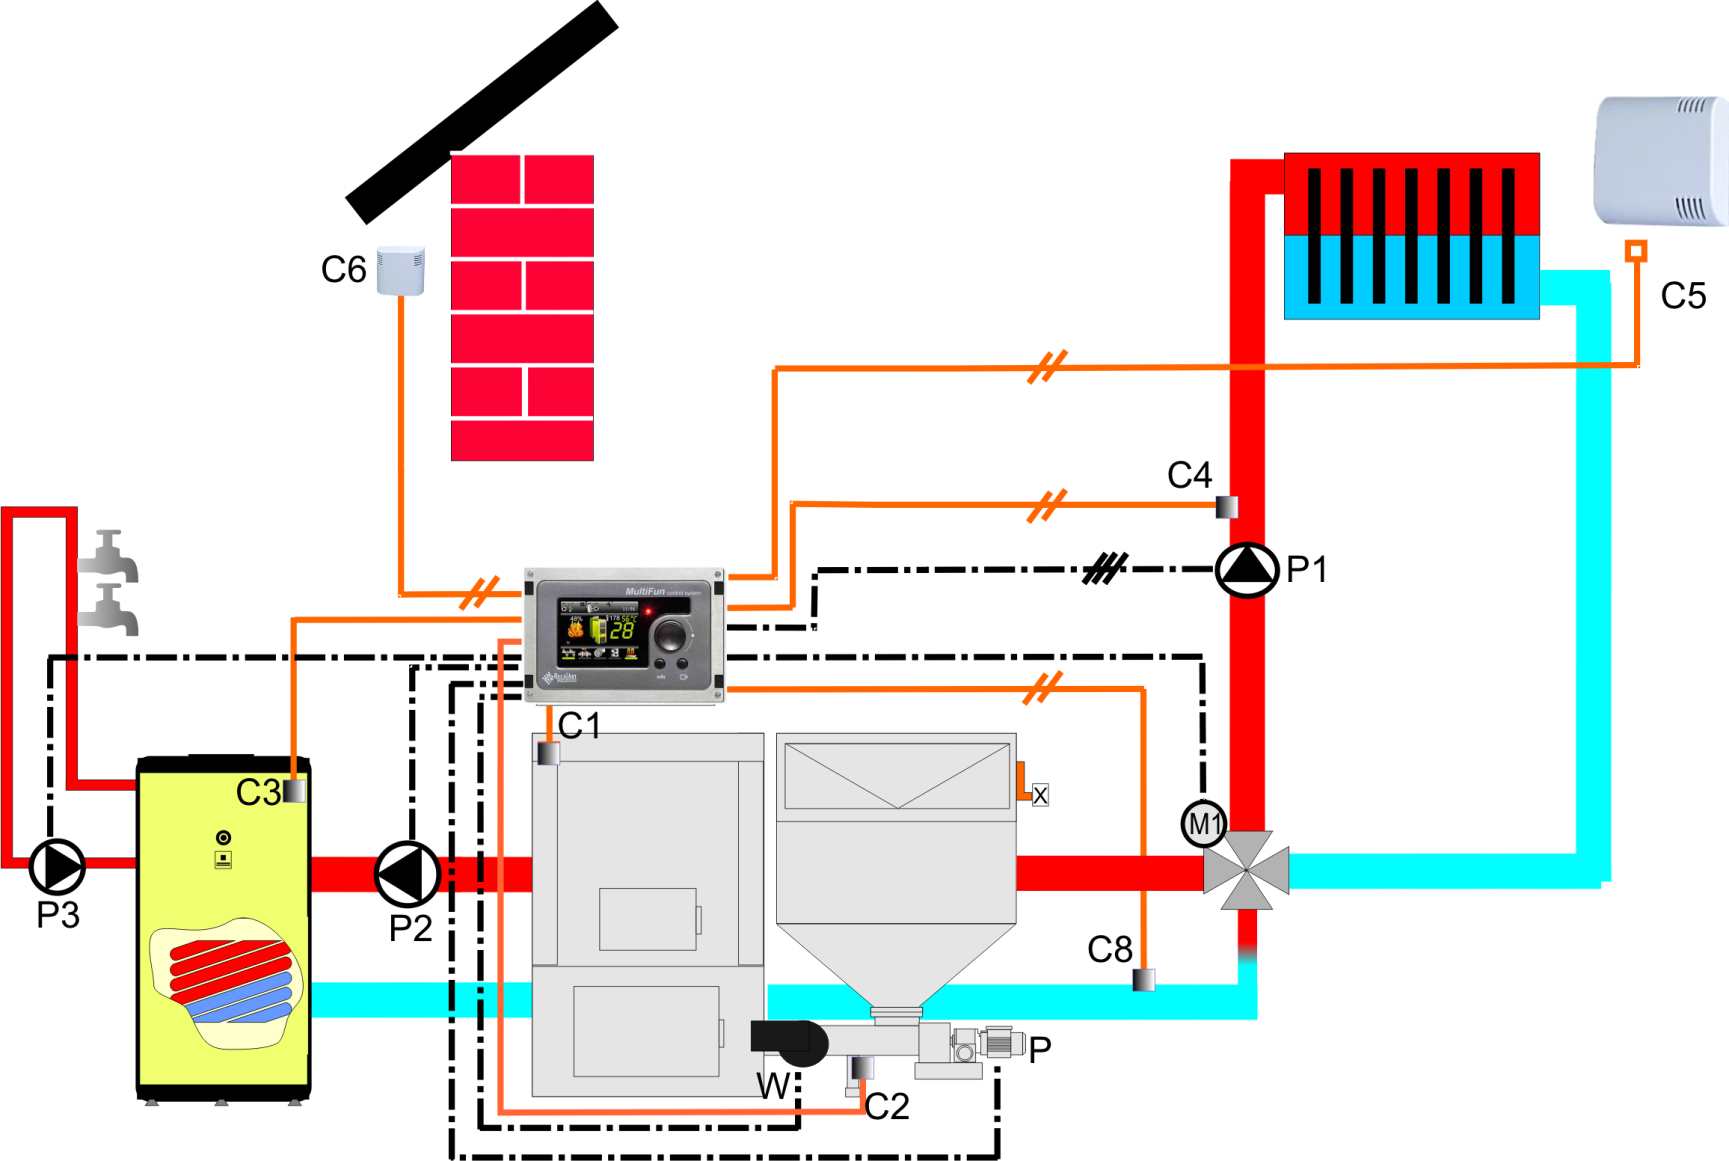 Schematy instalacji C1- czujnik kotła zasilanie, C2- czujnik podajnika, C3- czujnik C.W.U., C4- czujnik C.